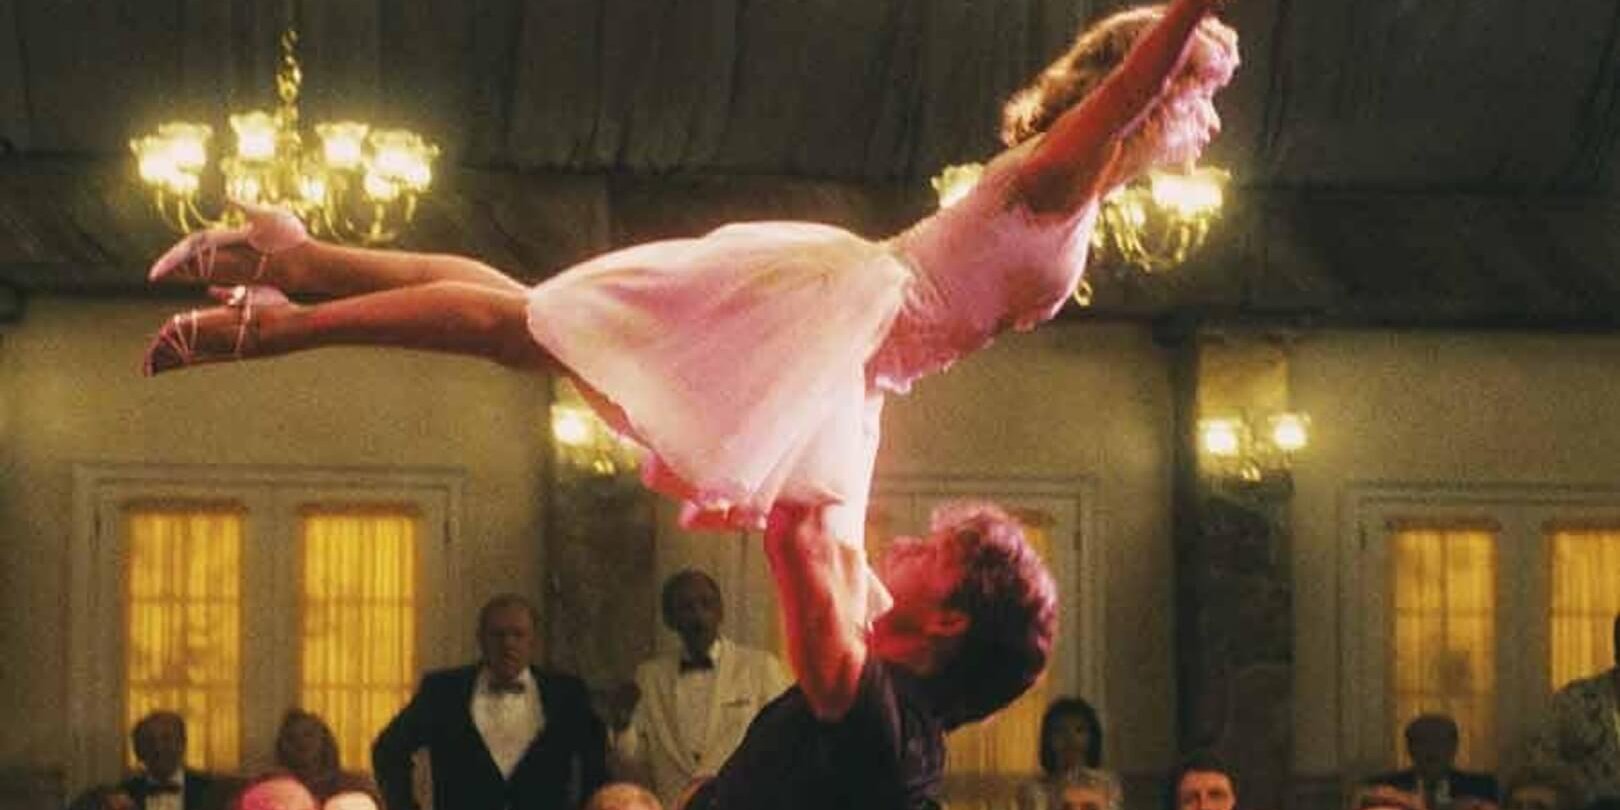 Se viene la secuela de Dirty Dancing: Jennifer Gray protagonizará la nueva película 33 años después del clásico